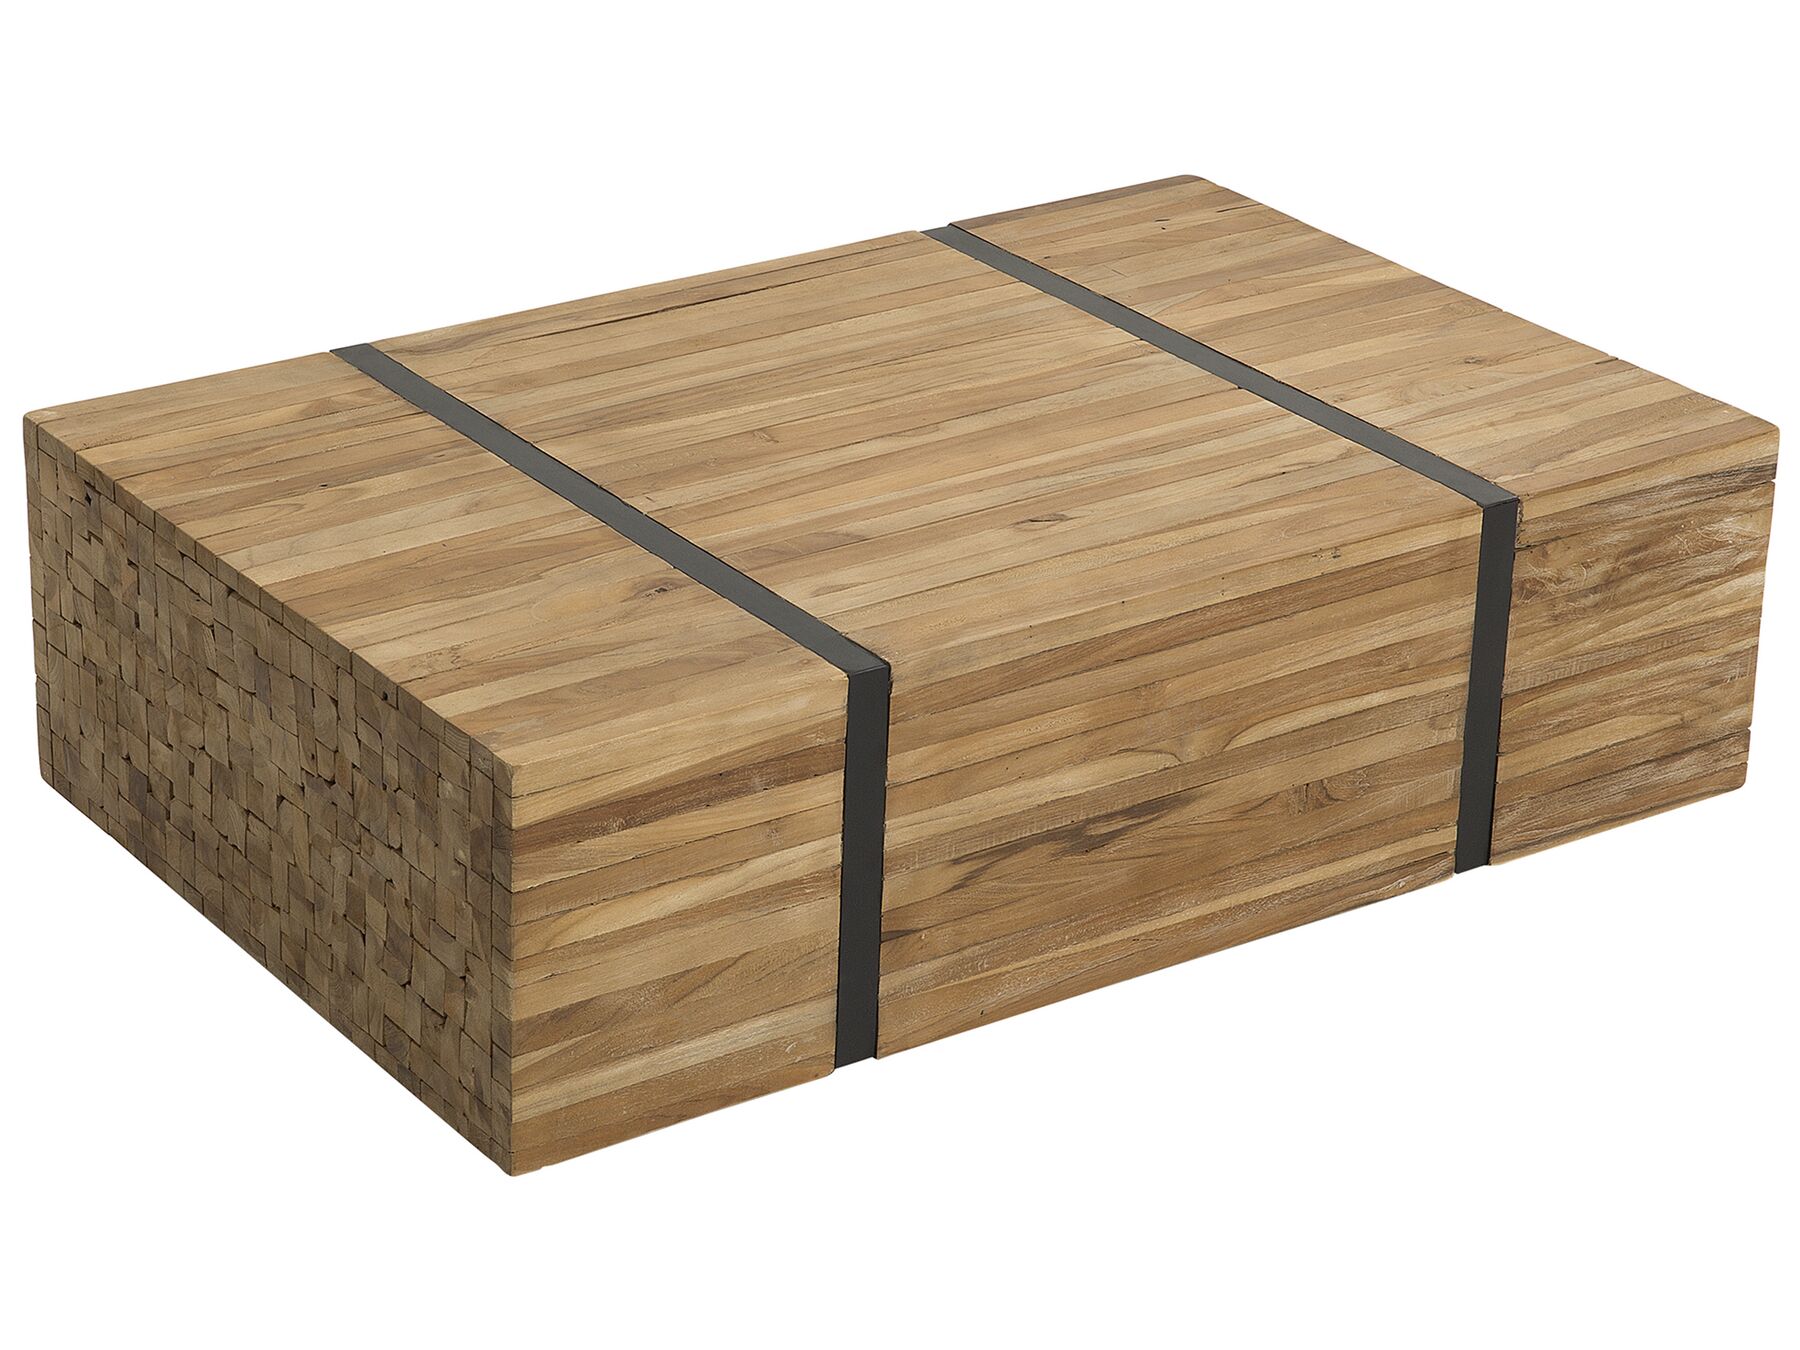 Rectangular Rustic Coffee Table Teak Wood and Metal Gander